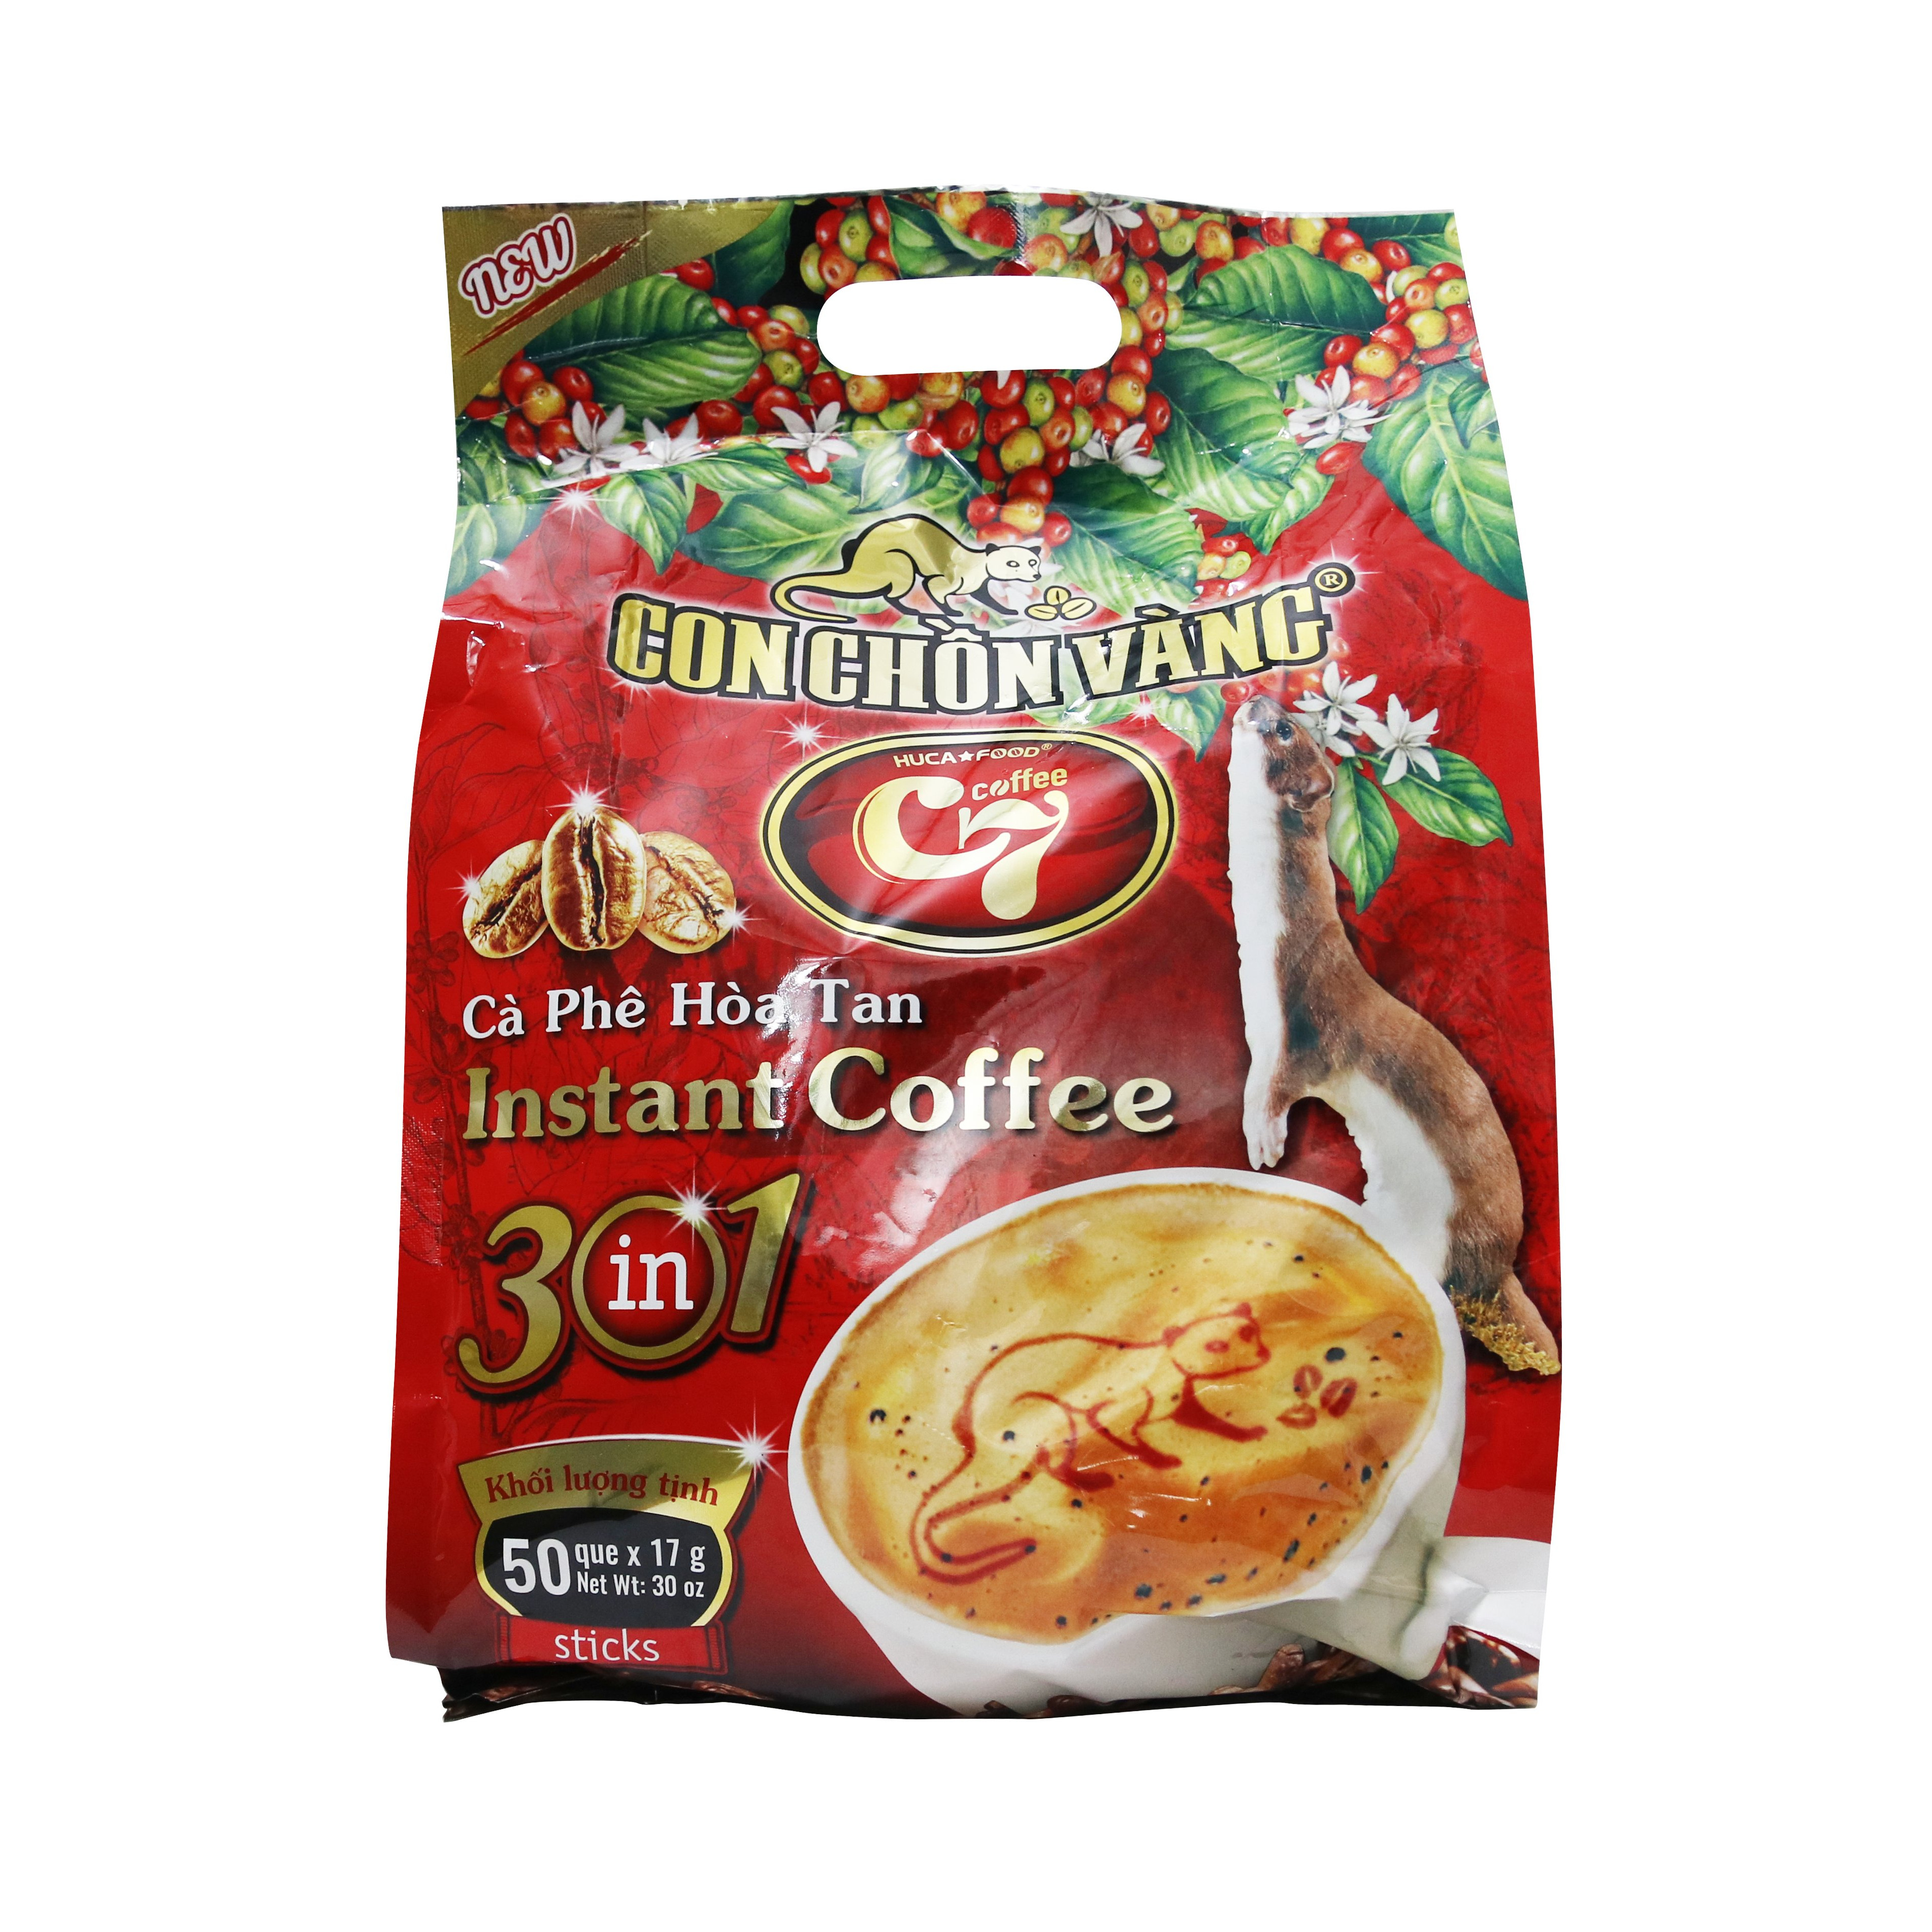 Cà Phê Hòa Tan 3in1 Con Chồn Vàng C7 Túi Đỏ 50 Que - Huca Food